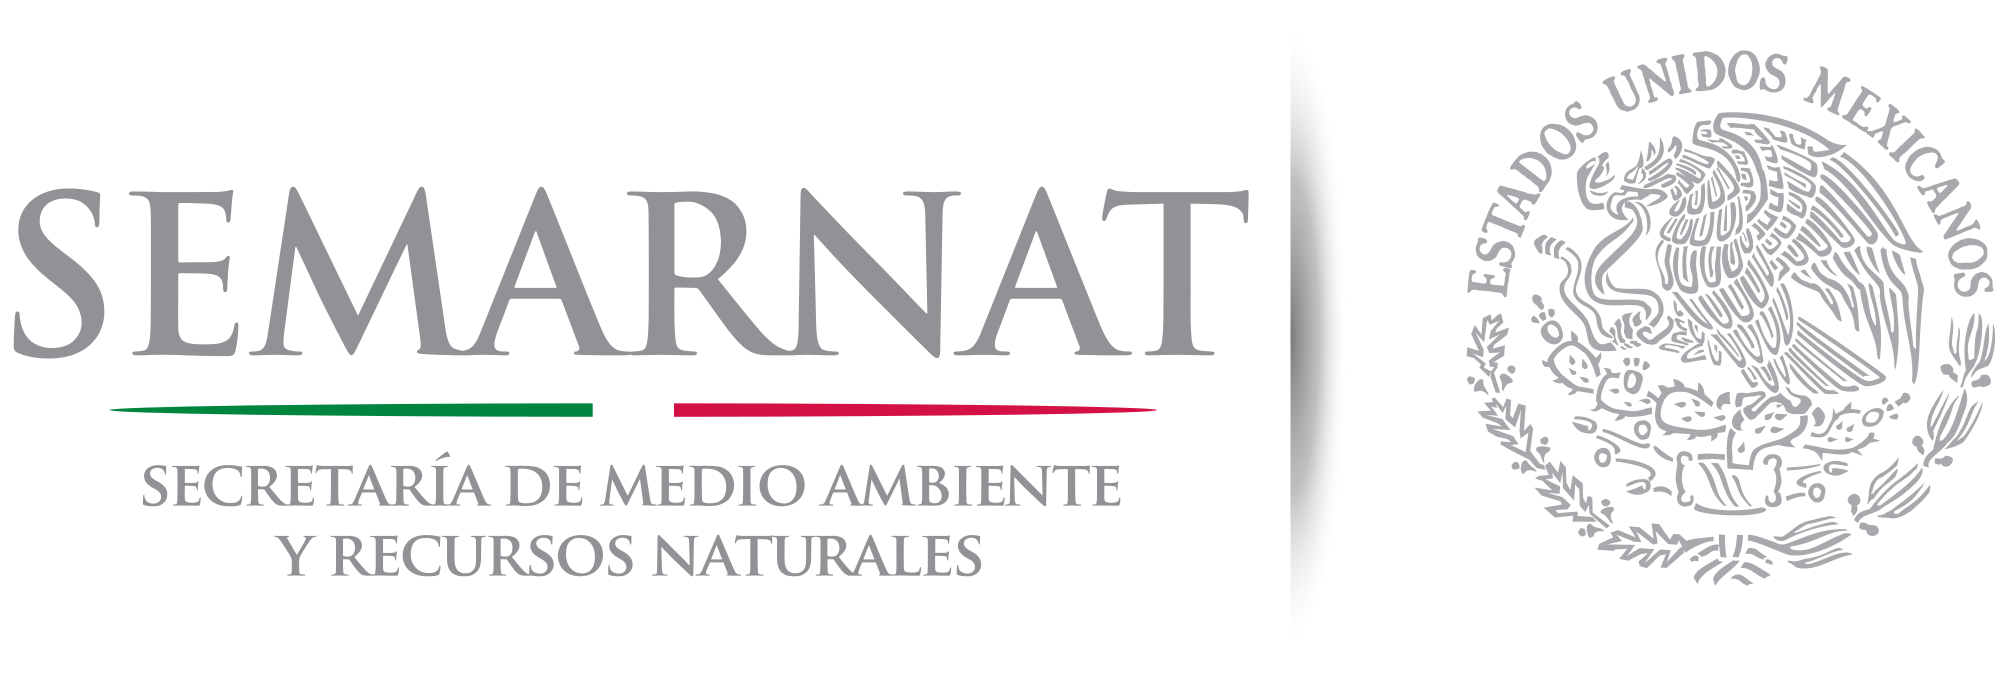 SEMARNAT_logo_2012.png